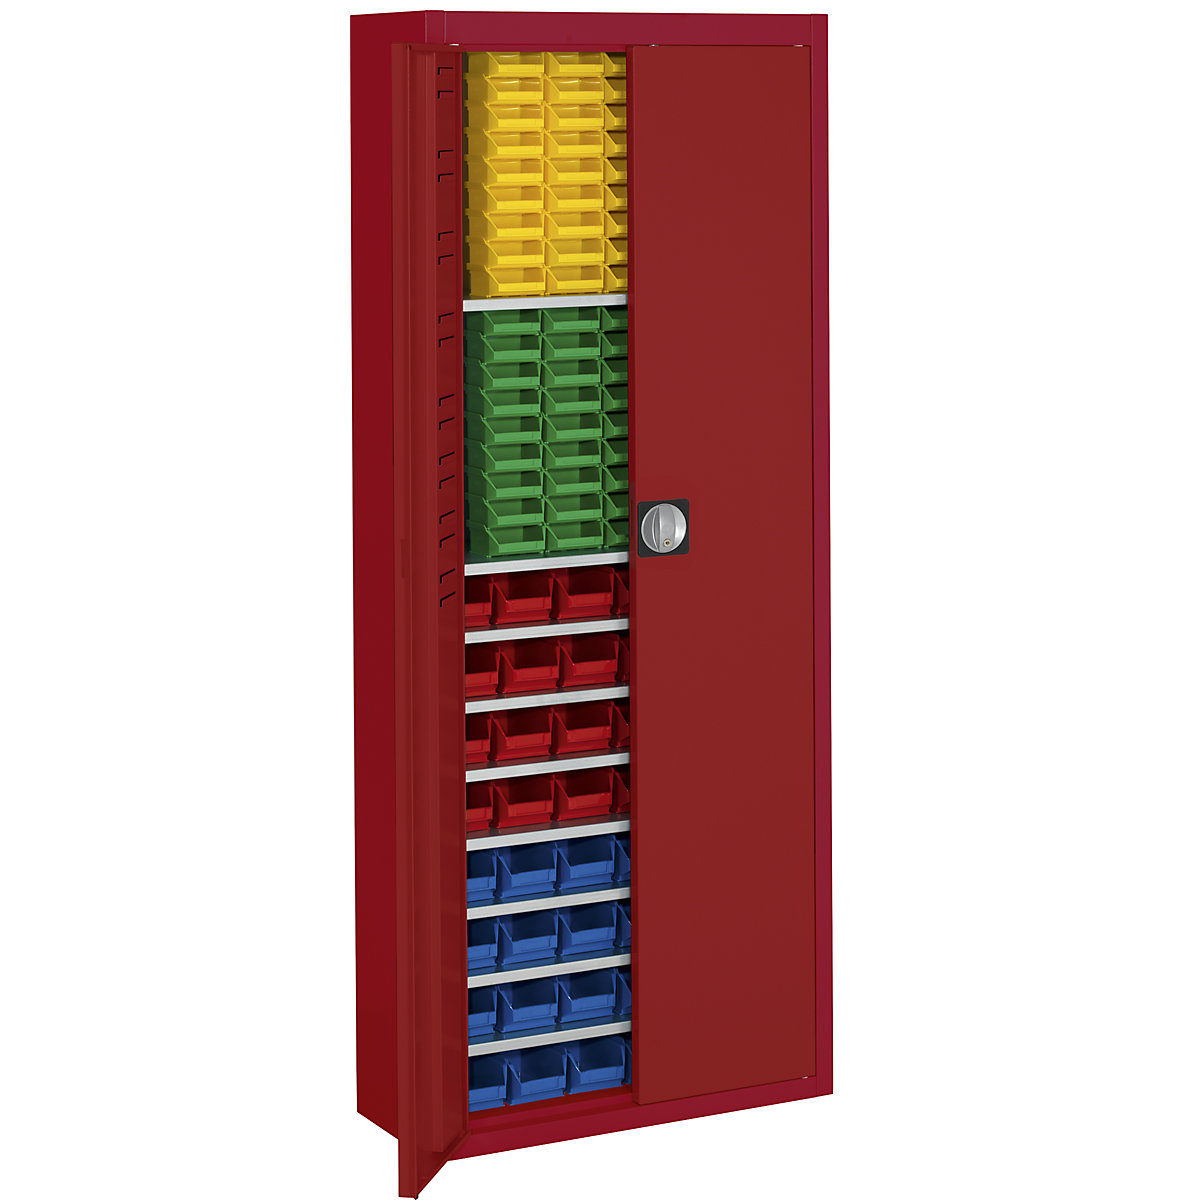 Skladová skříň s přepravkami s viditelným obsahem – mauser, v x š x h 1740 x 680 x 280 mm, jednobarevné, červená, 138 přepravek-10